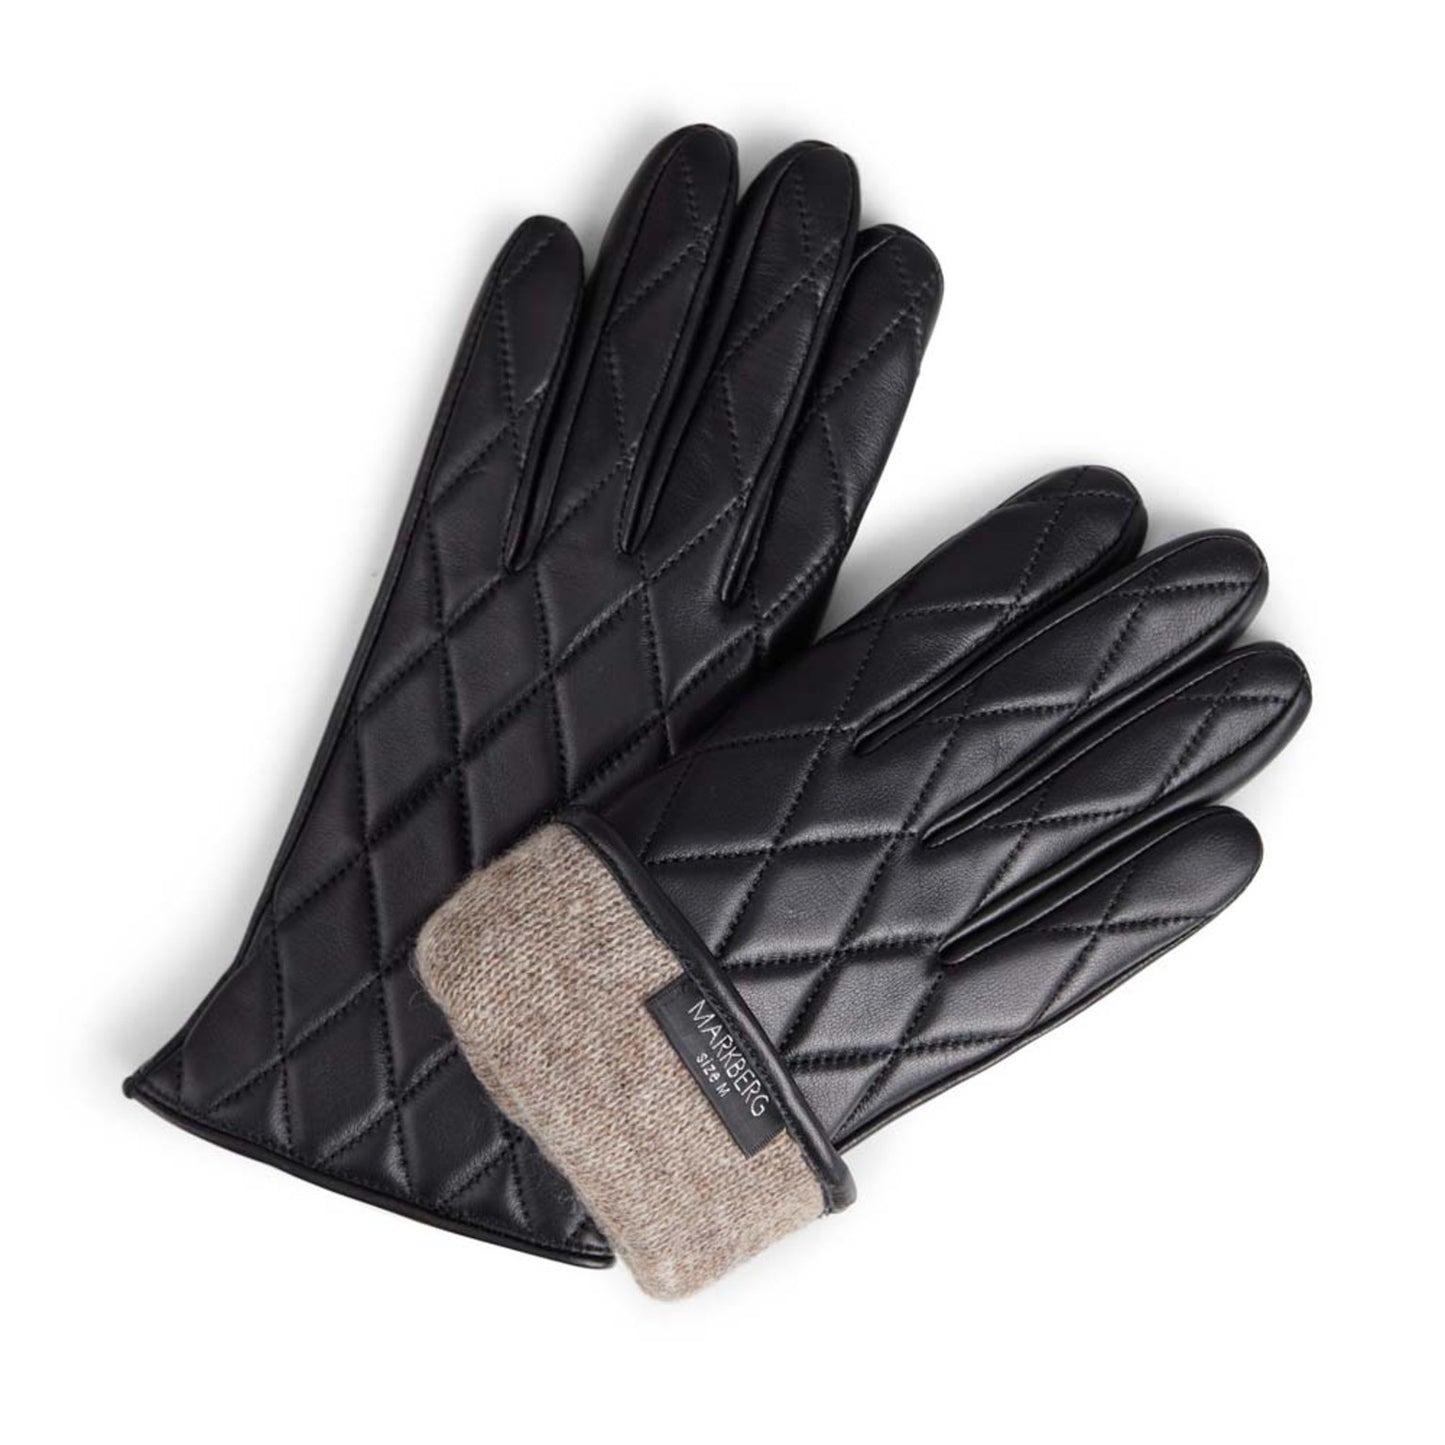 Nea Glove